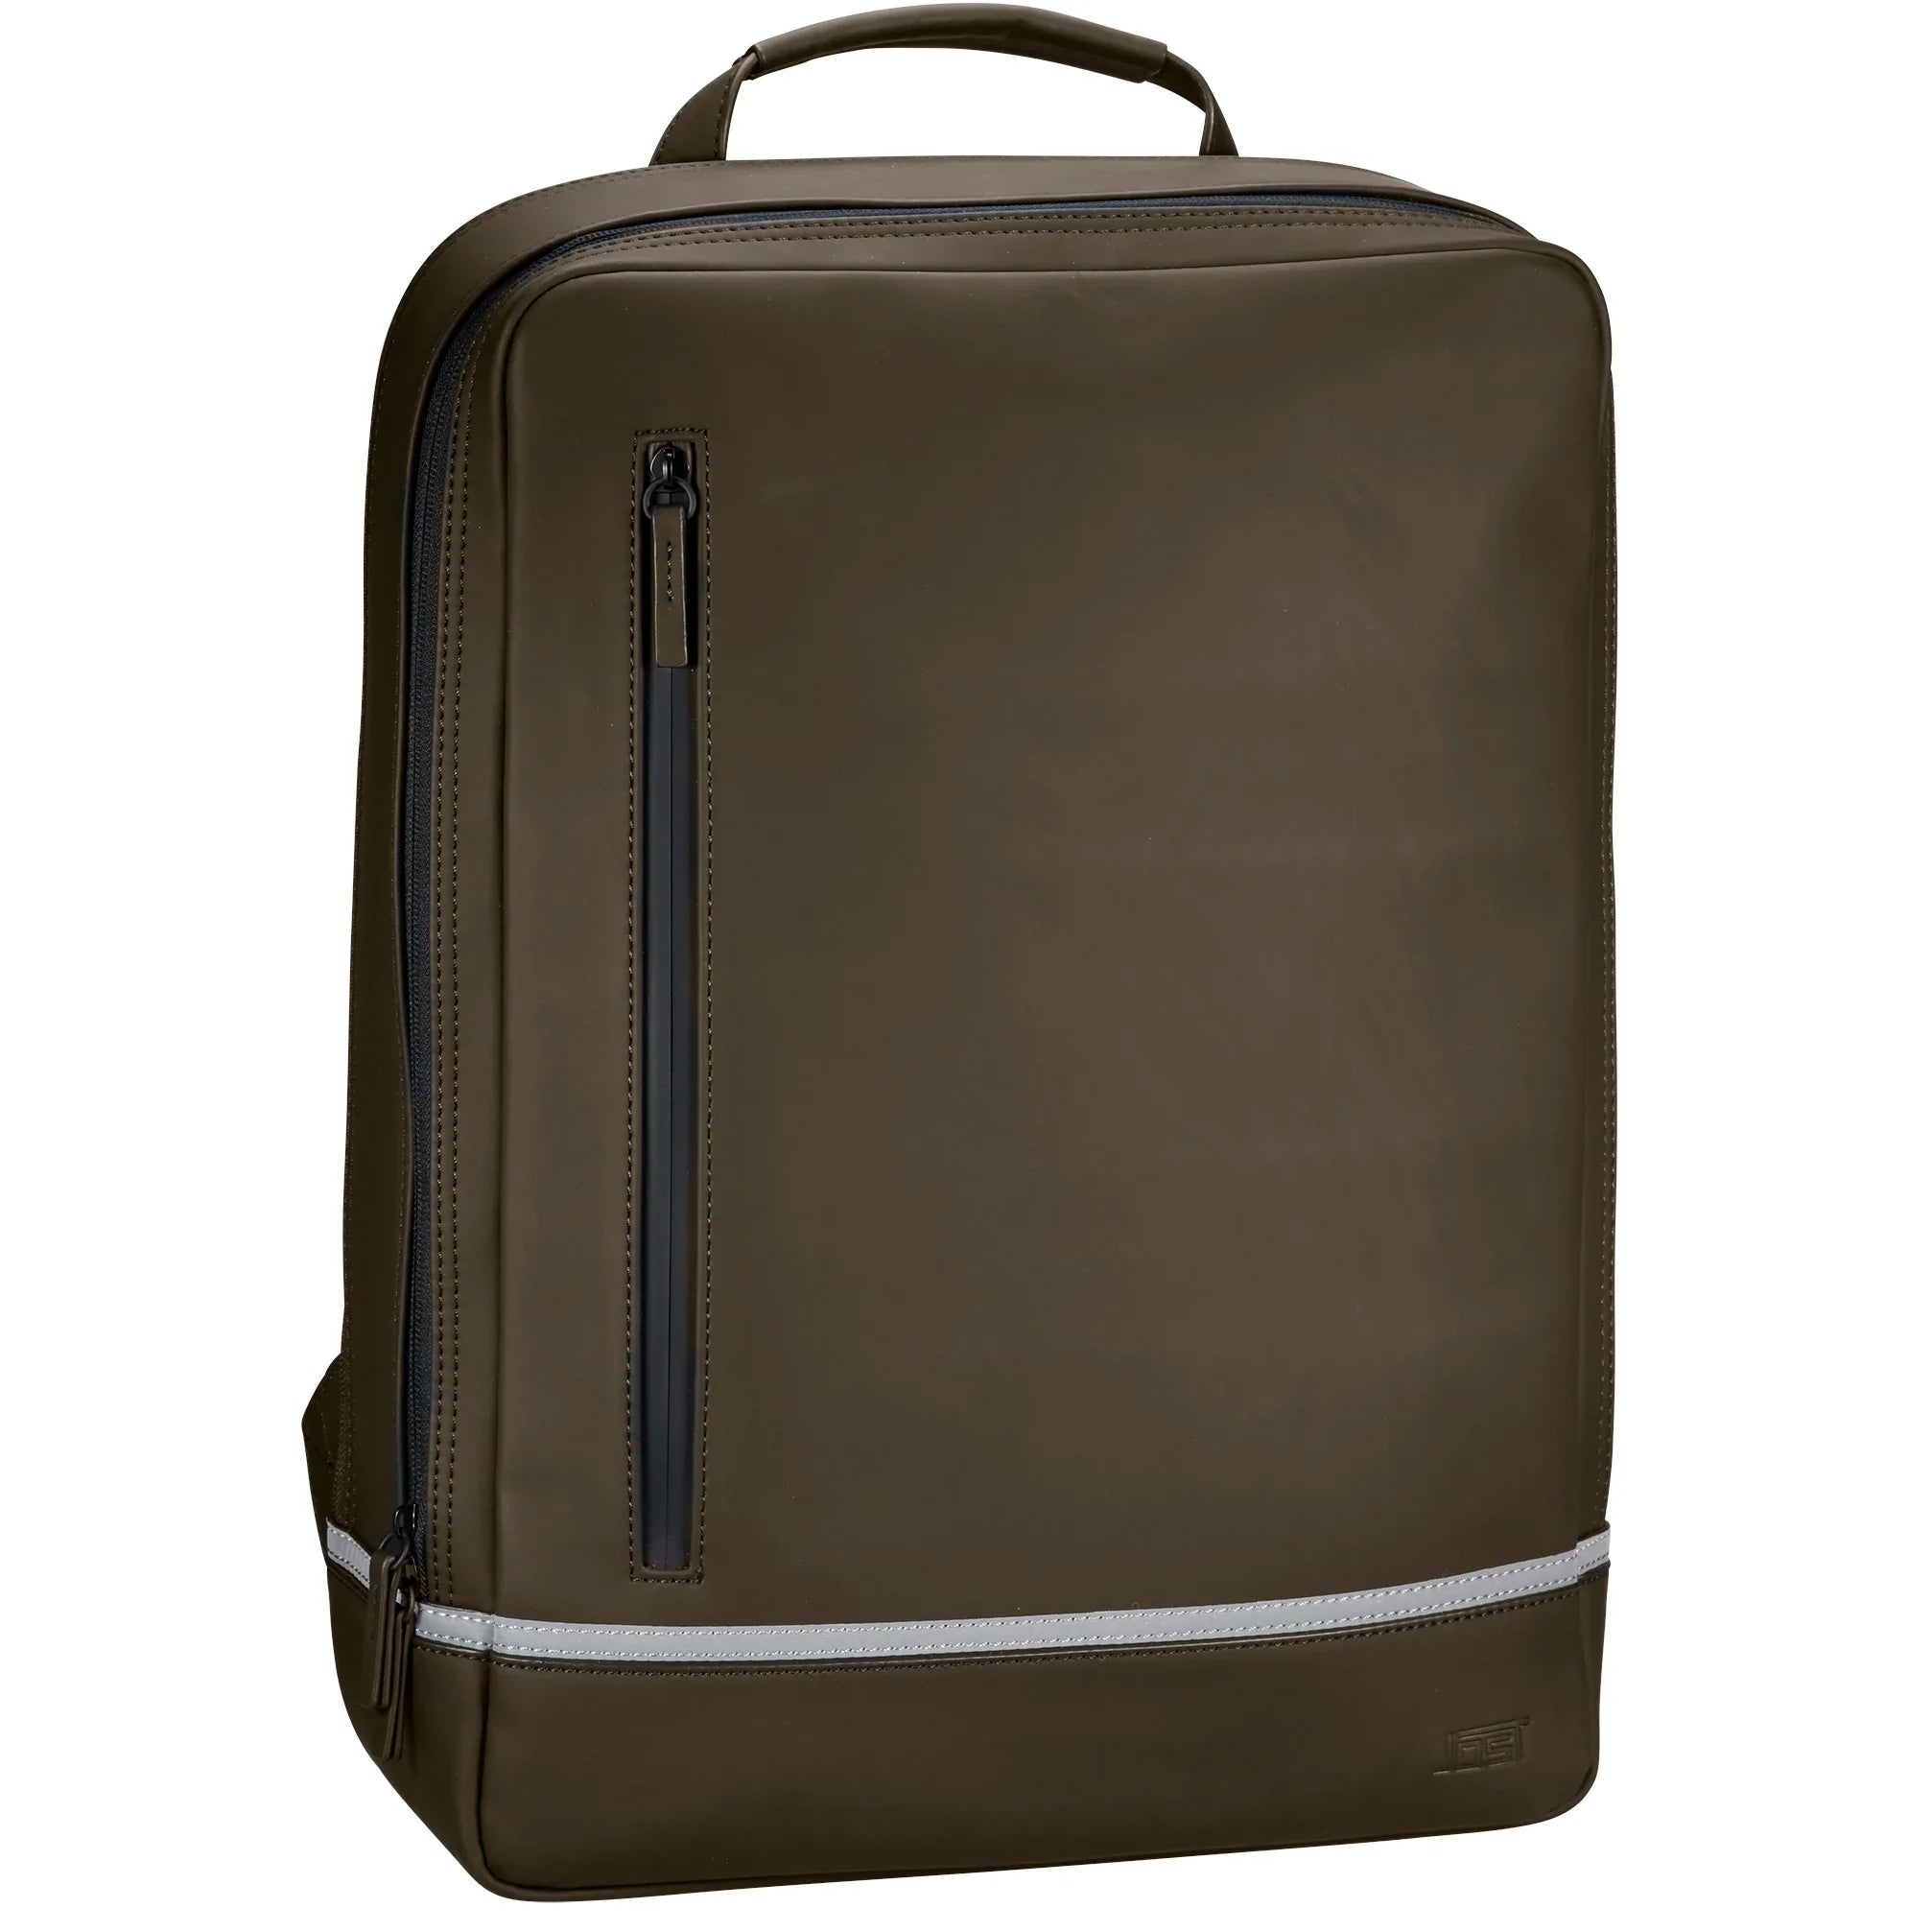 Jost Backpackspecial daypack leisure backpack 44 cm - Olive